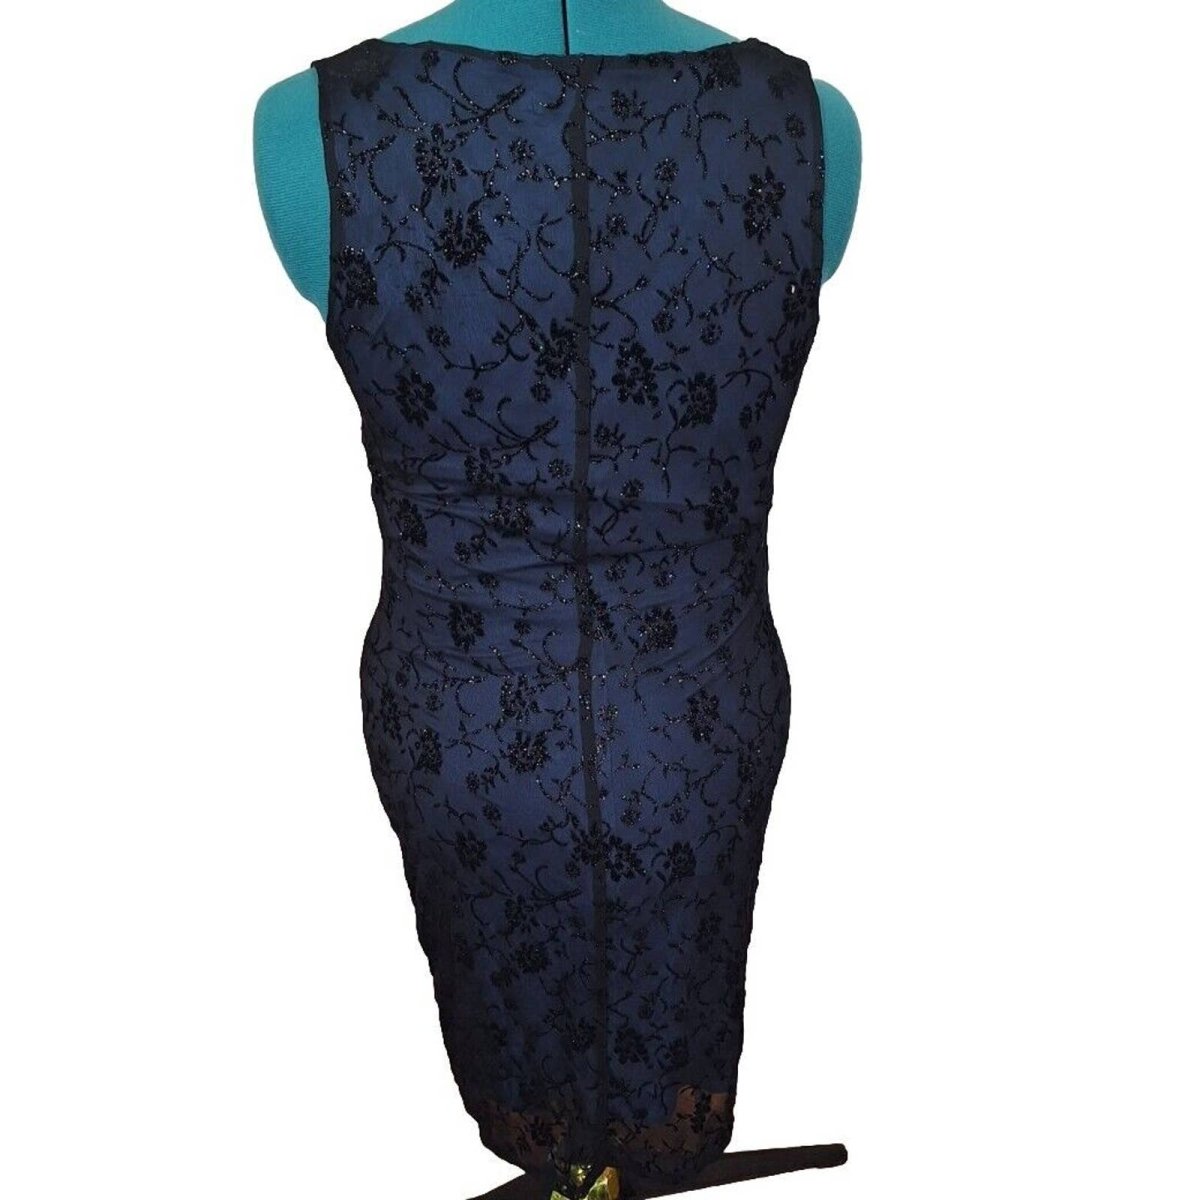 Vintage 90s Blue/Black Burnout Velvet Mesh Bodycon Party Dress Women's Size M/L - themallvintage The Mall Vintage